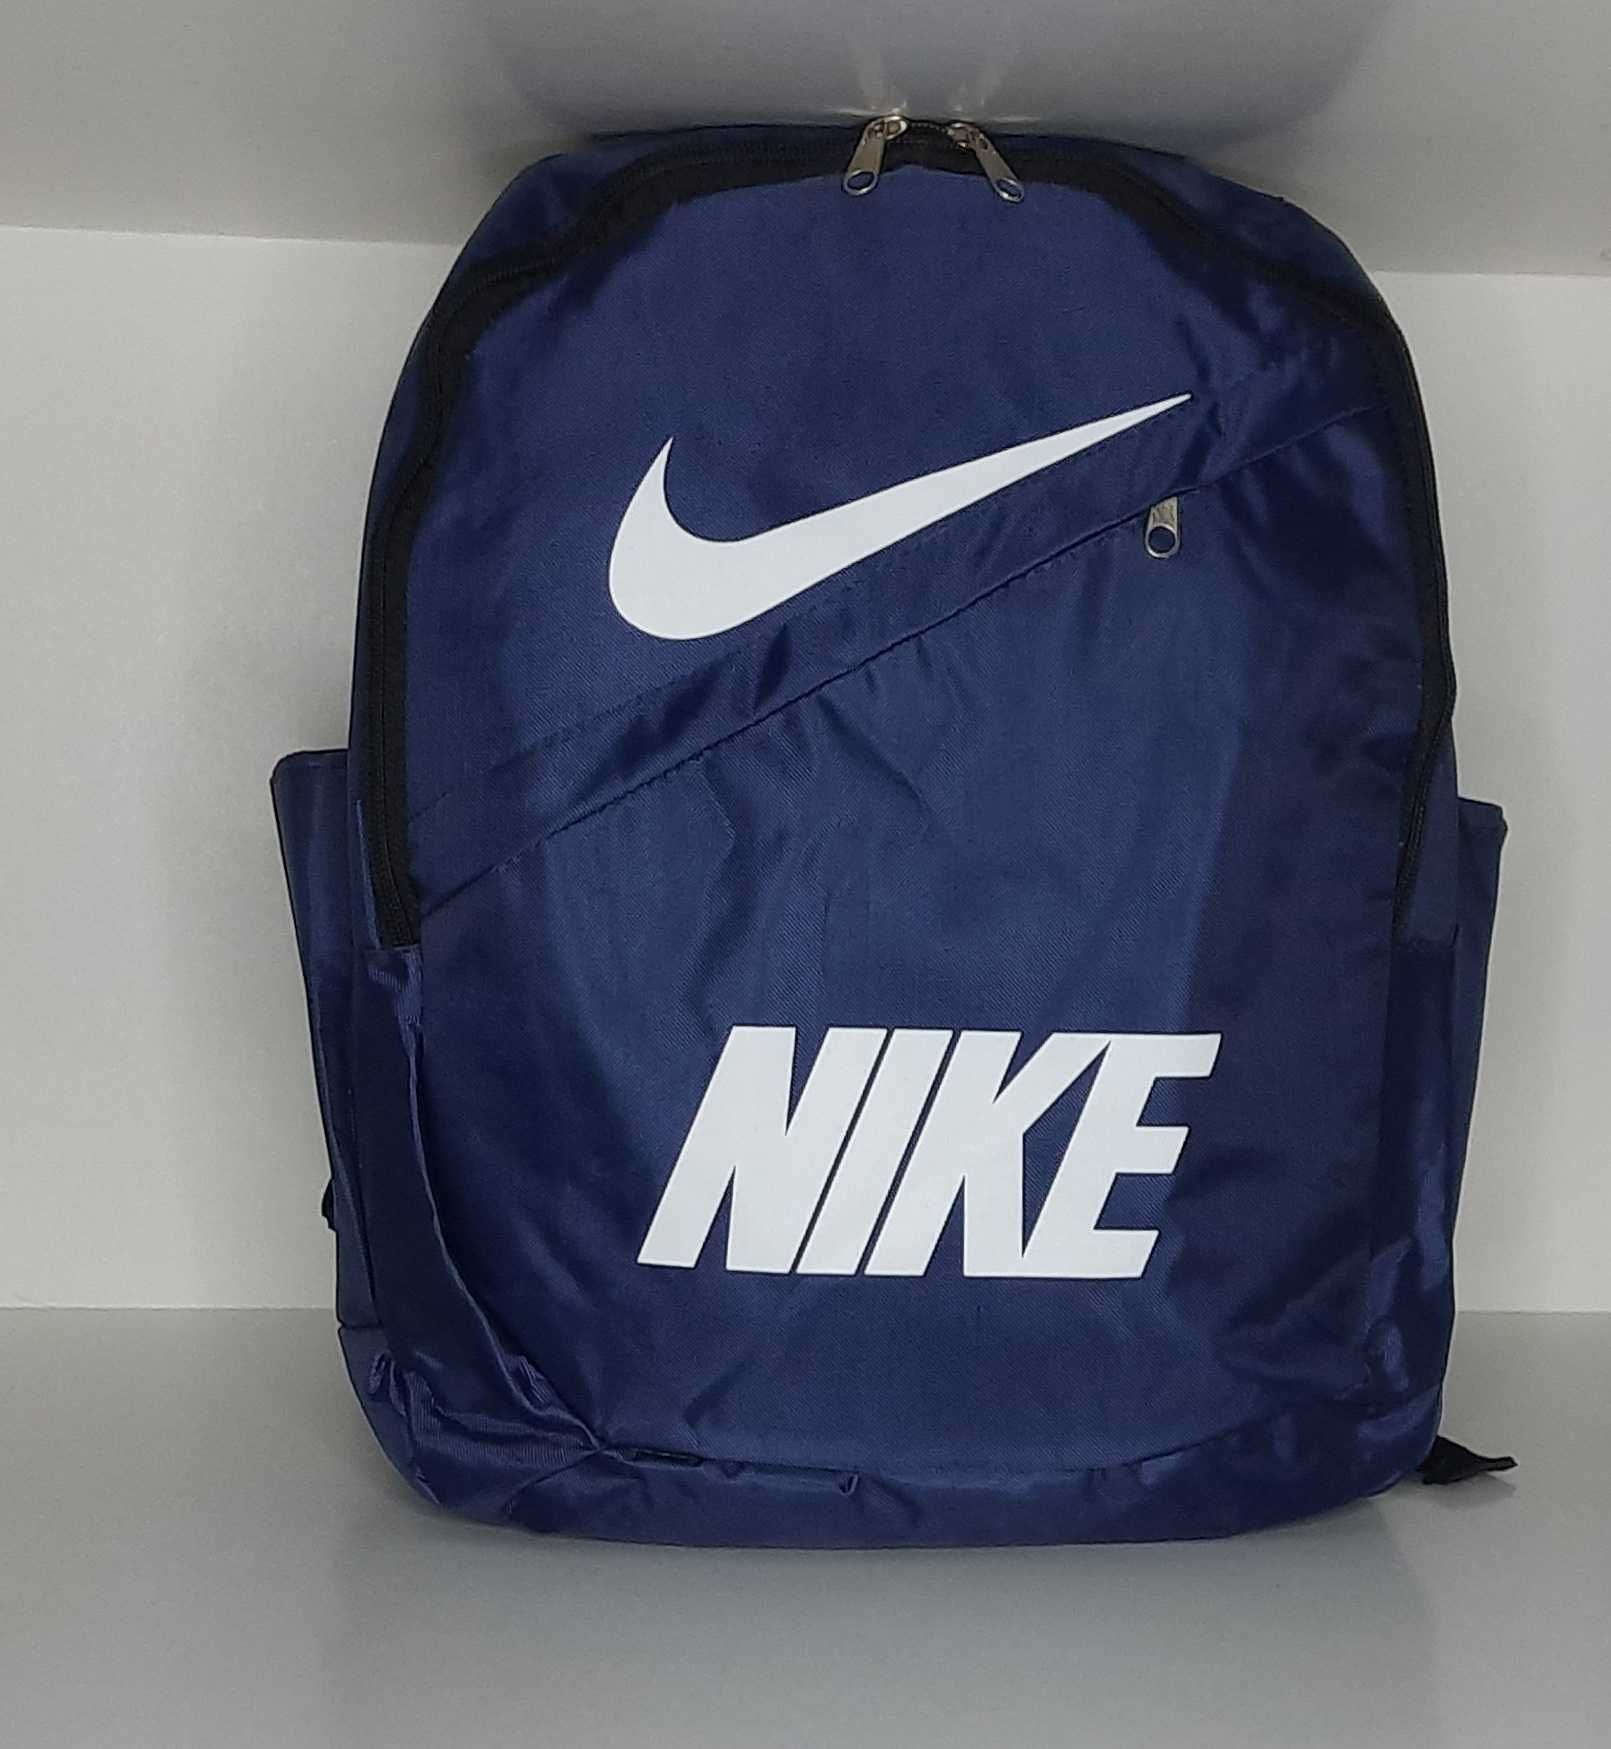 Спортивный рюкзак Nike. Sport. Цвет - тёмно синий. Новый.